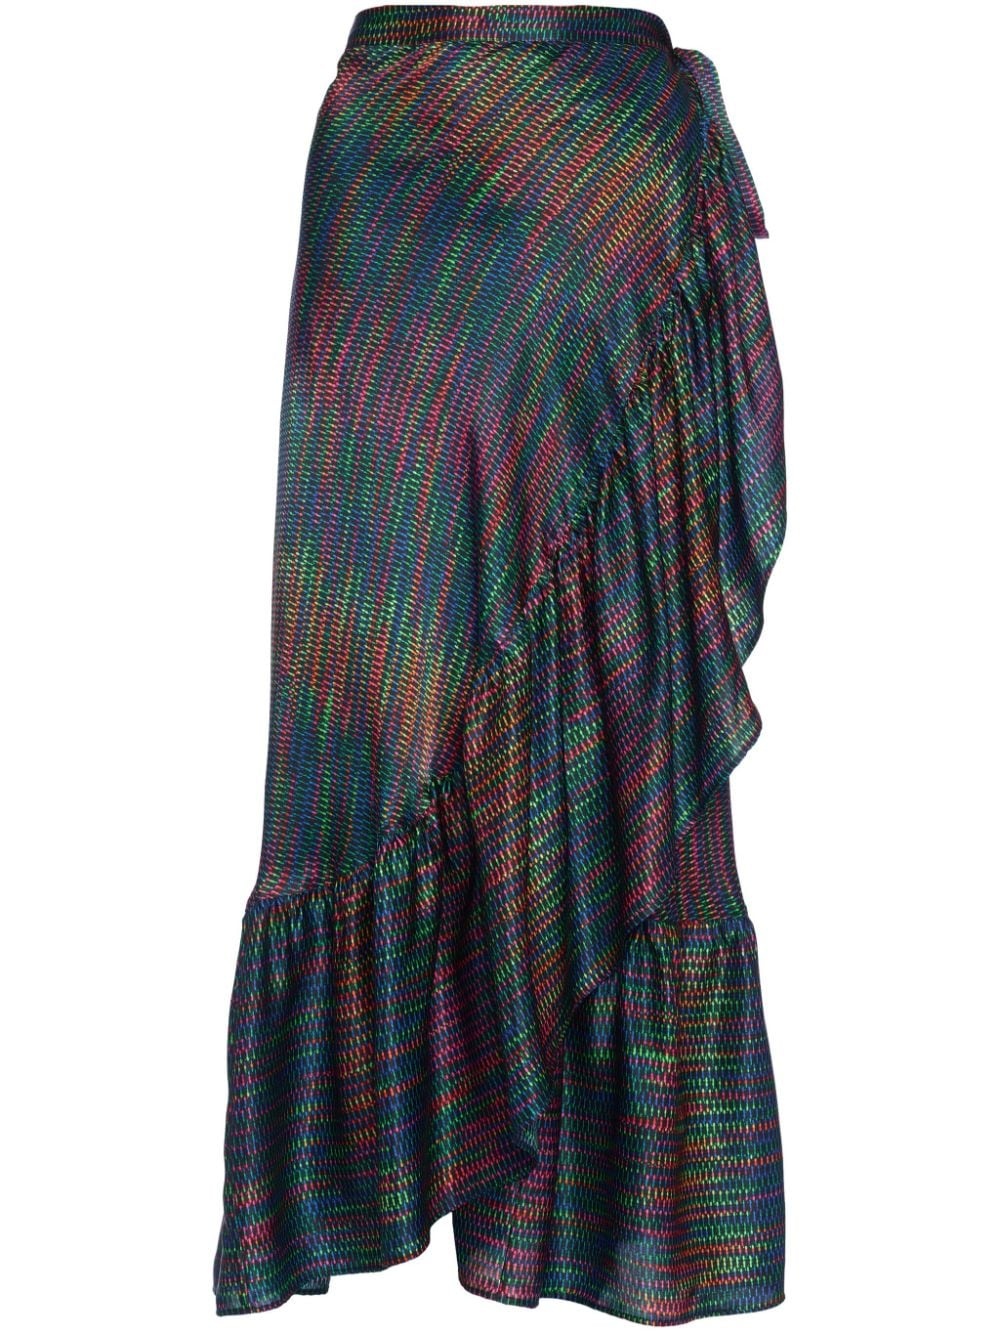 Neon silk draped skirt - 1